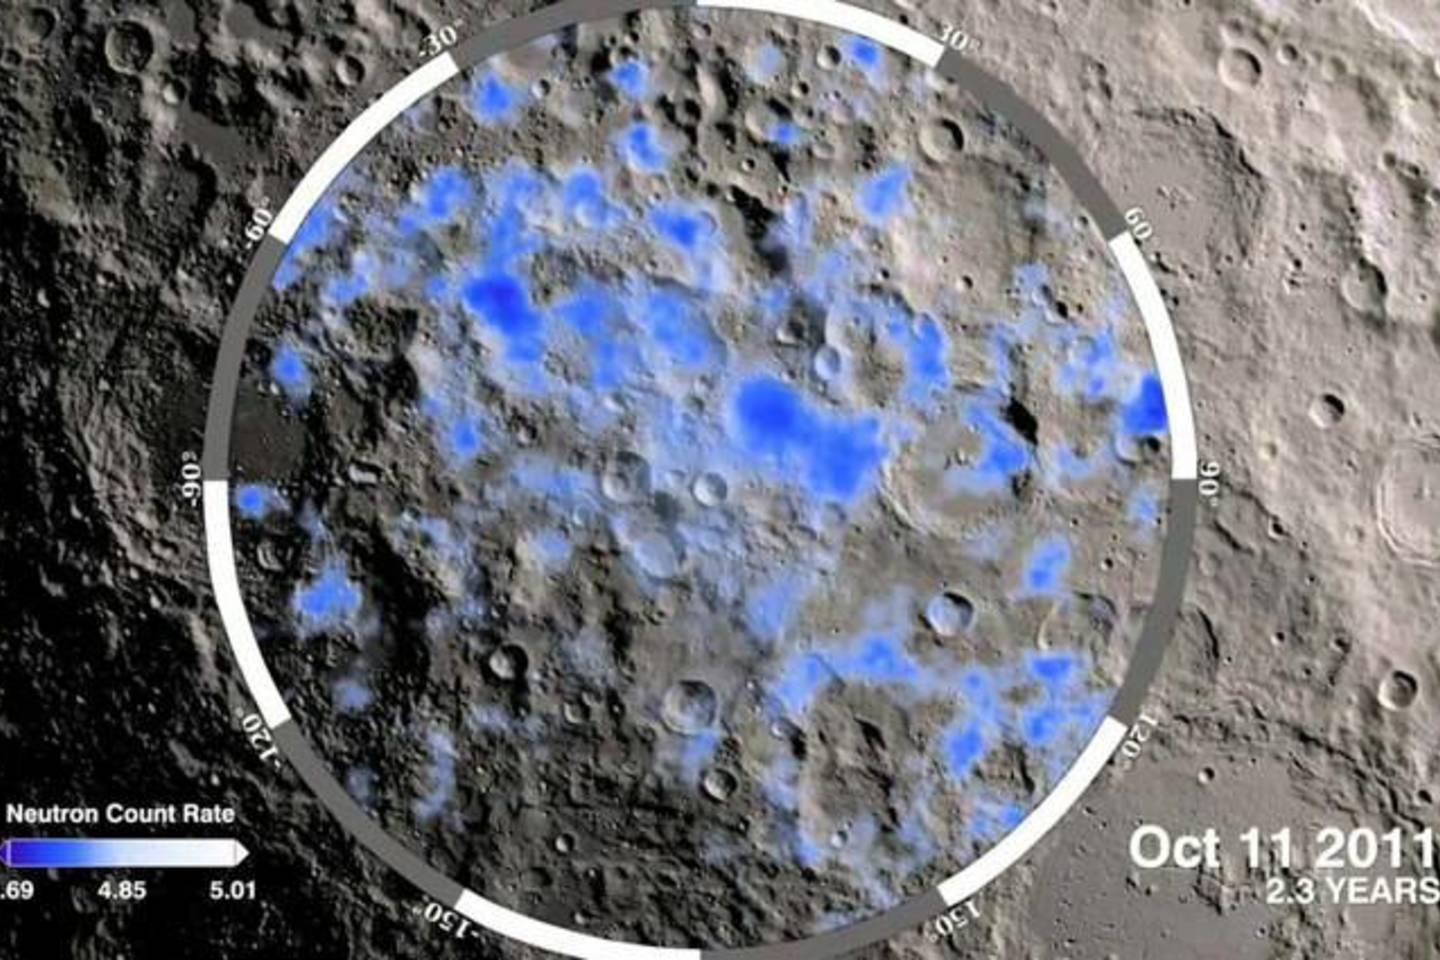  Mėnulio orbitinis zondas, įrodęs vandens buvimą Mėnulyje <br> NASA iliustr.